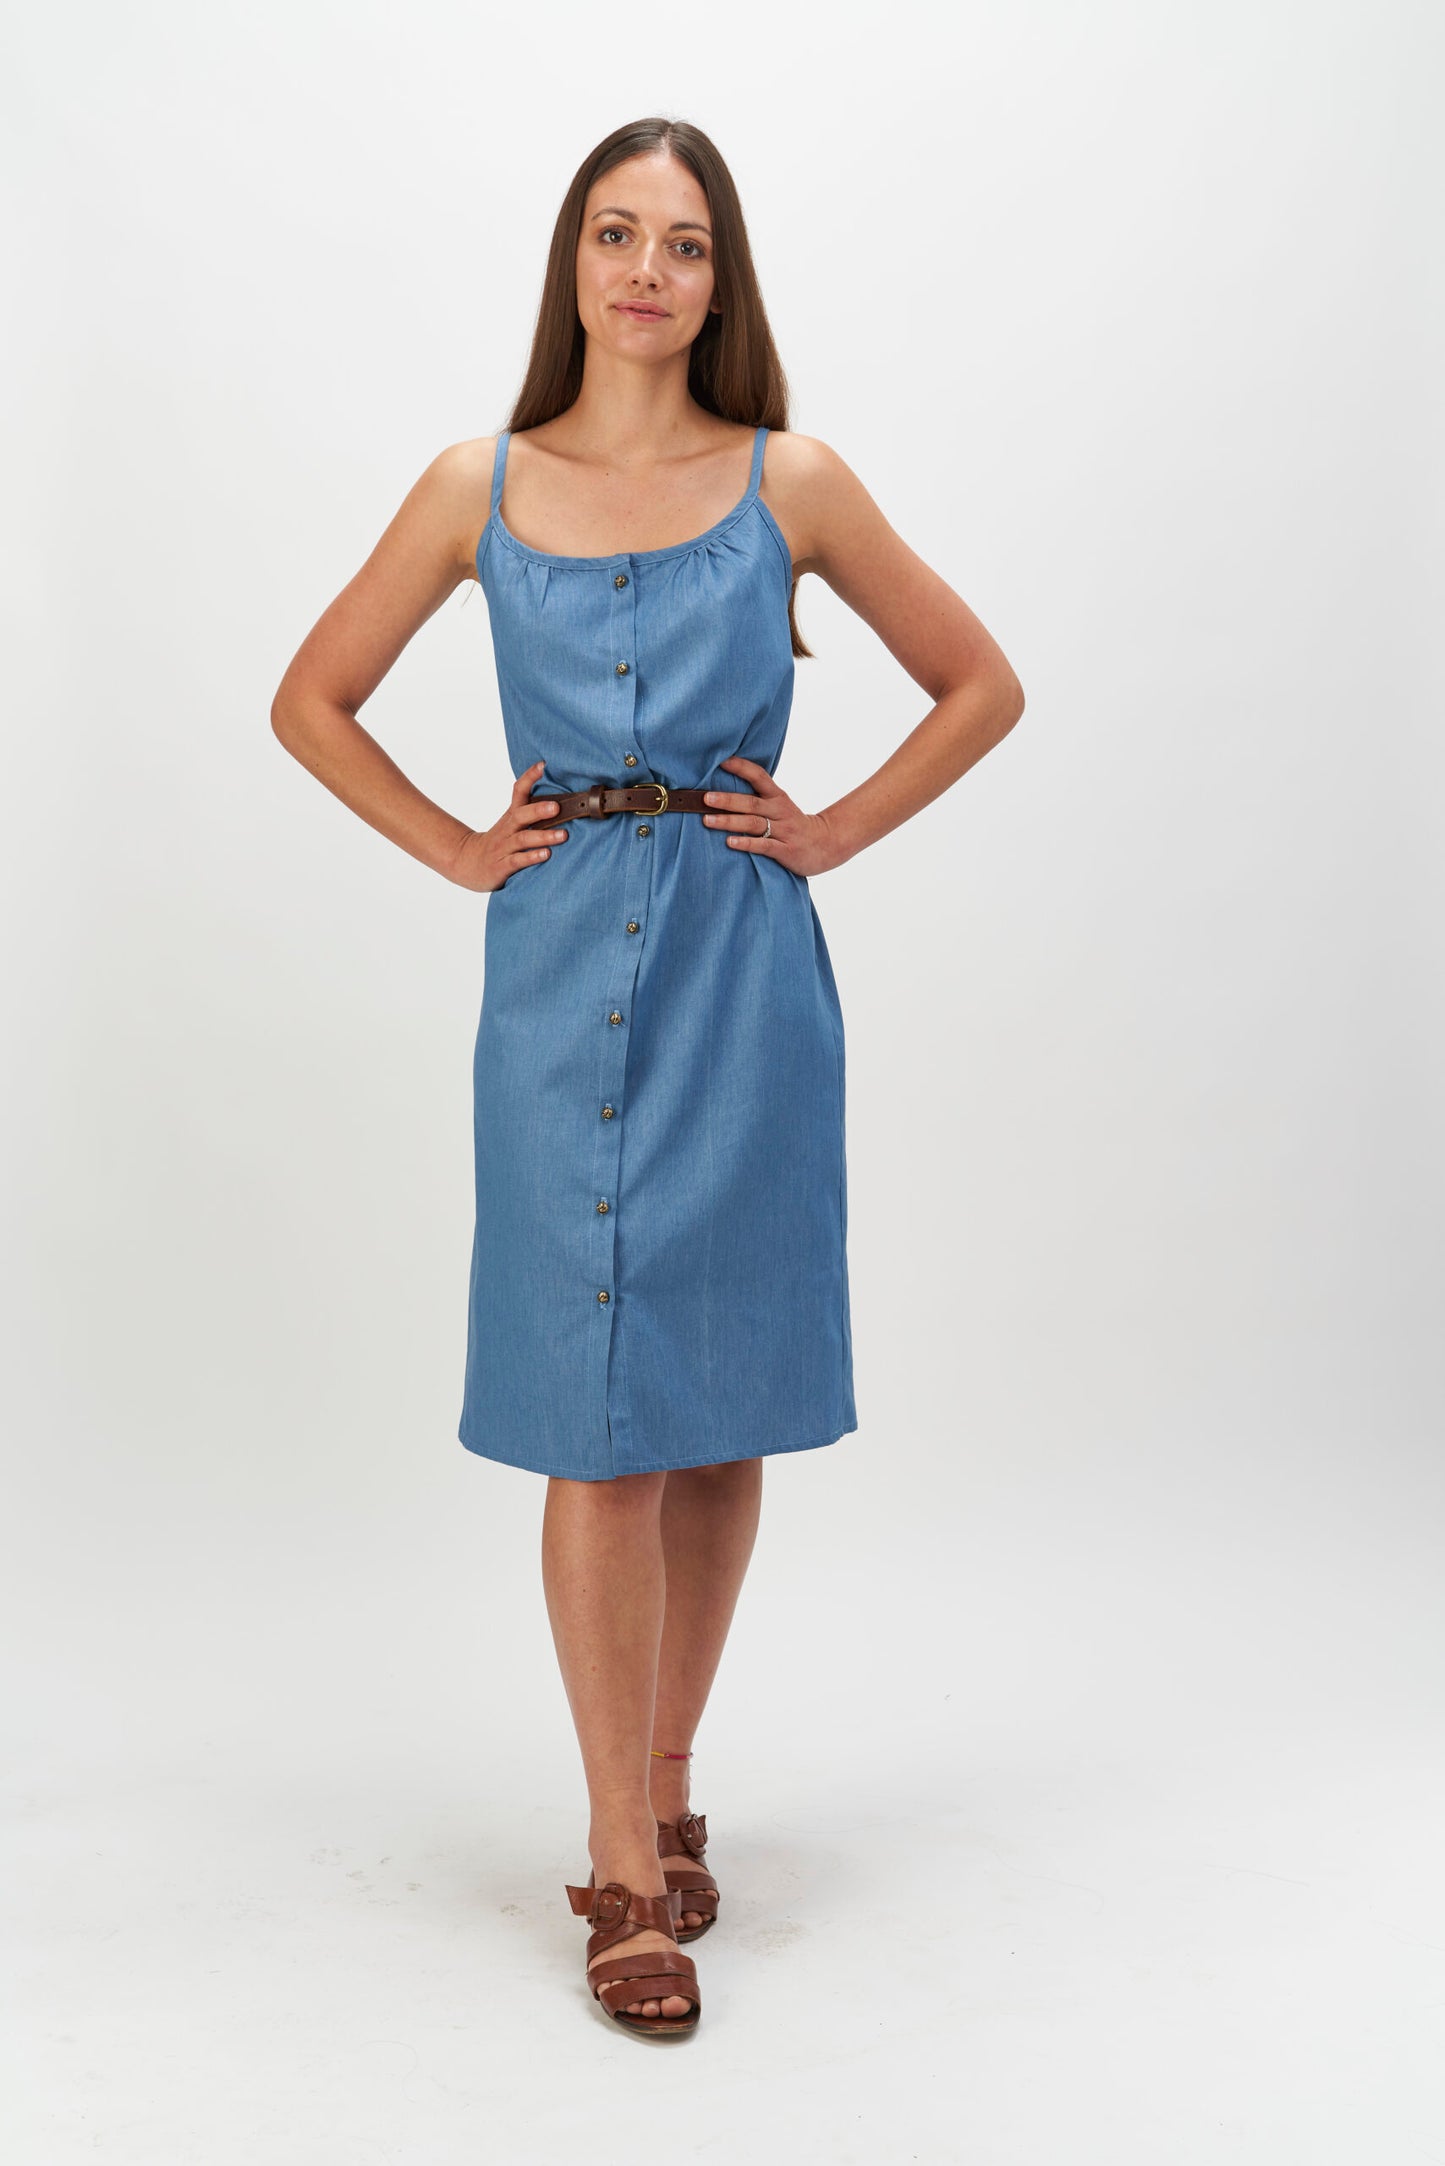 Lottie Dress PDF Sewing Pattern